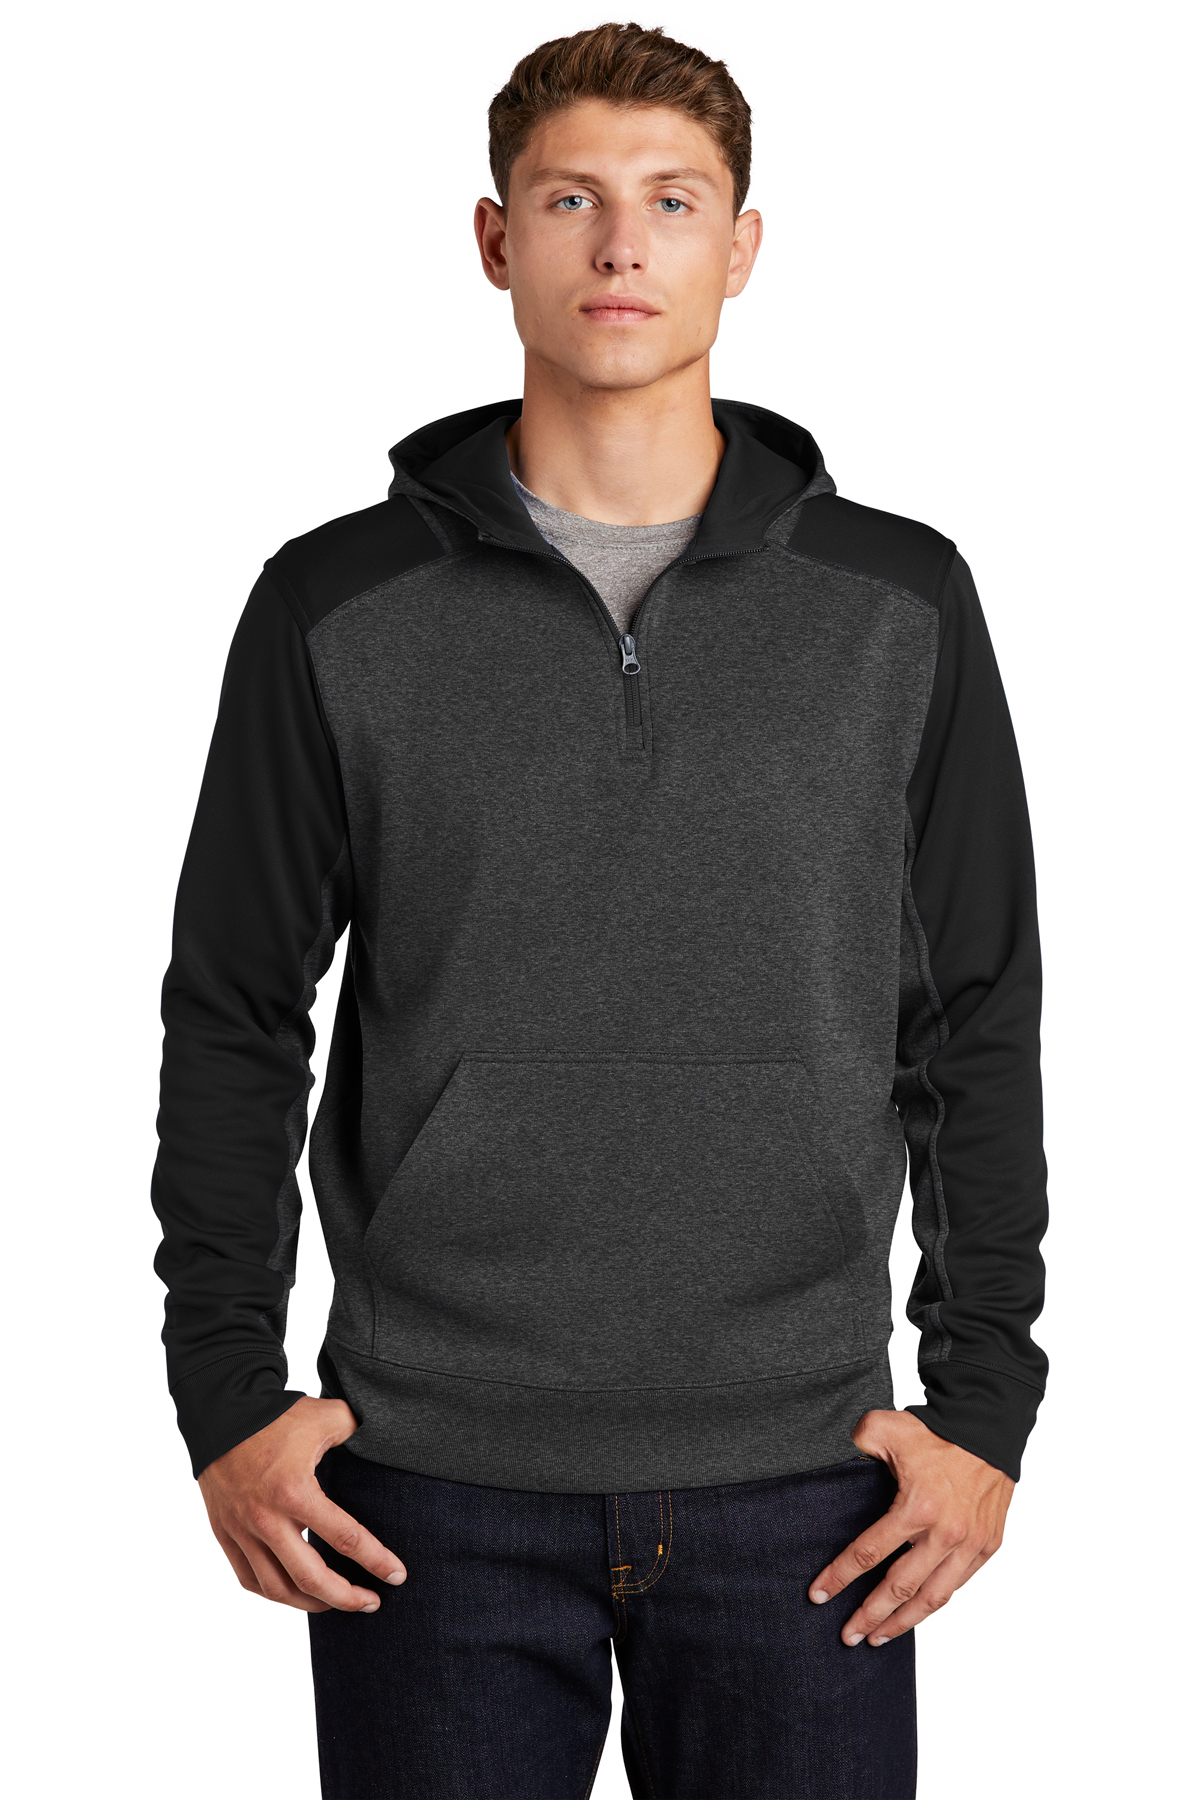 Sport-Tek Tech Fleece Colorblock 1/4-Zip Hooded Sweatshirt | Product ...